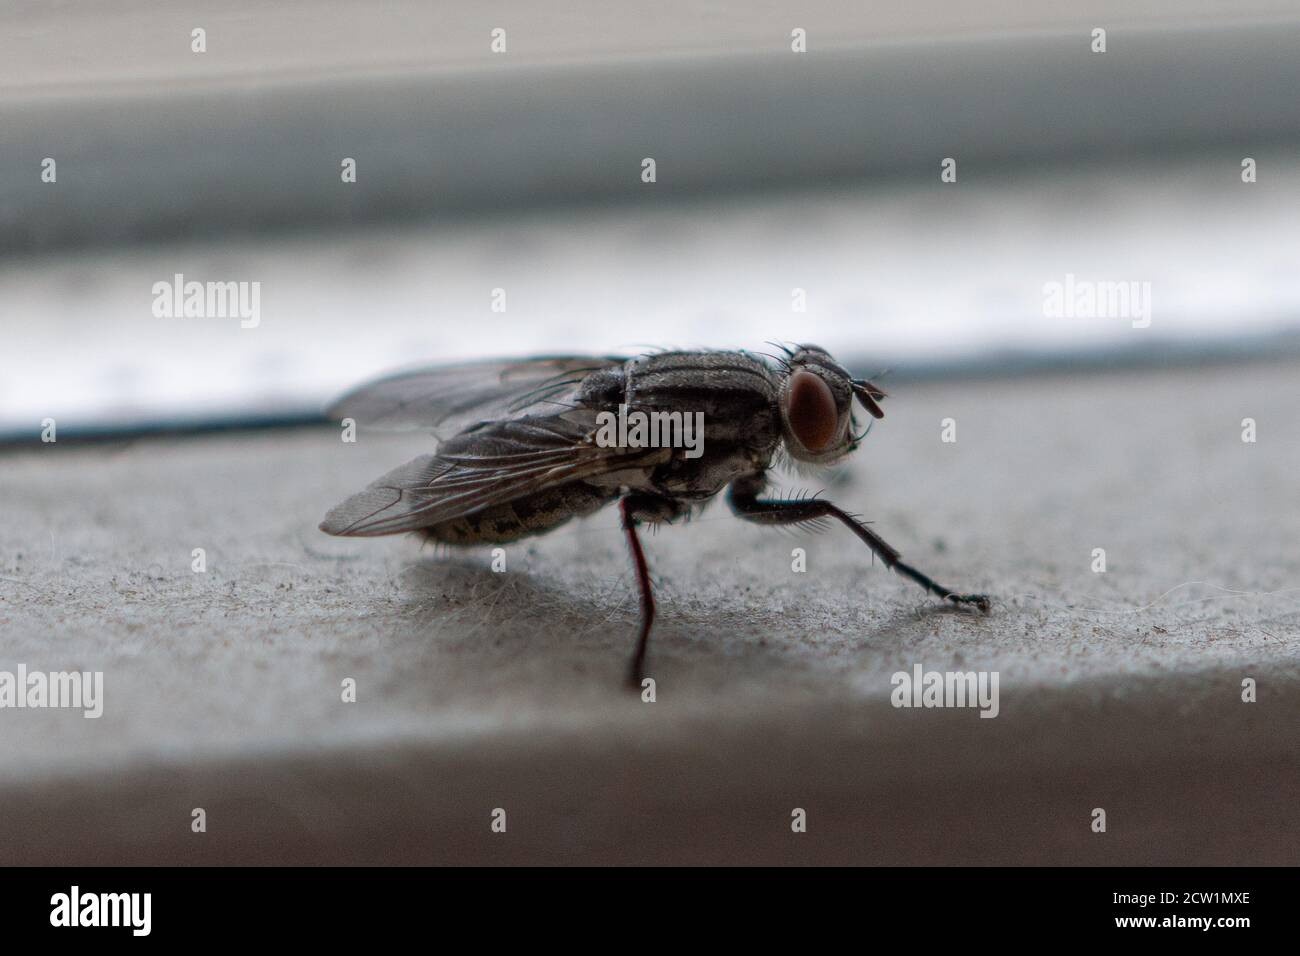 Primo piano ritratto di mosca, comune insetto di colore scuro Foto Stock